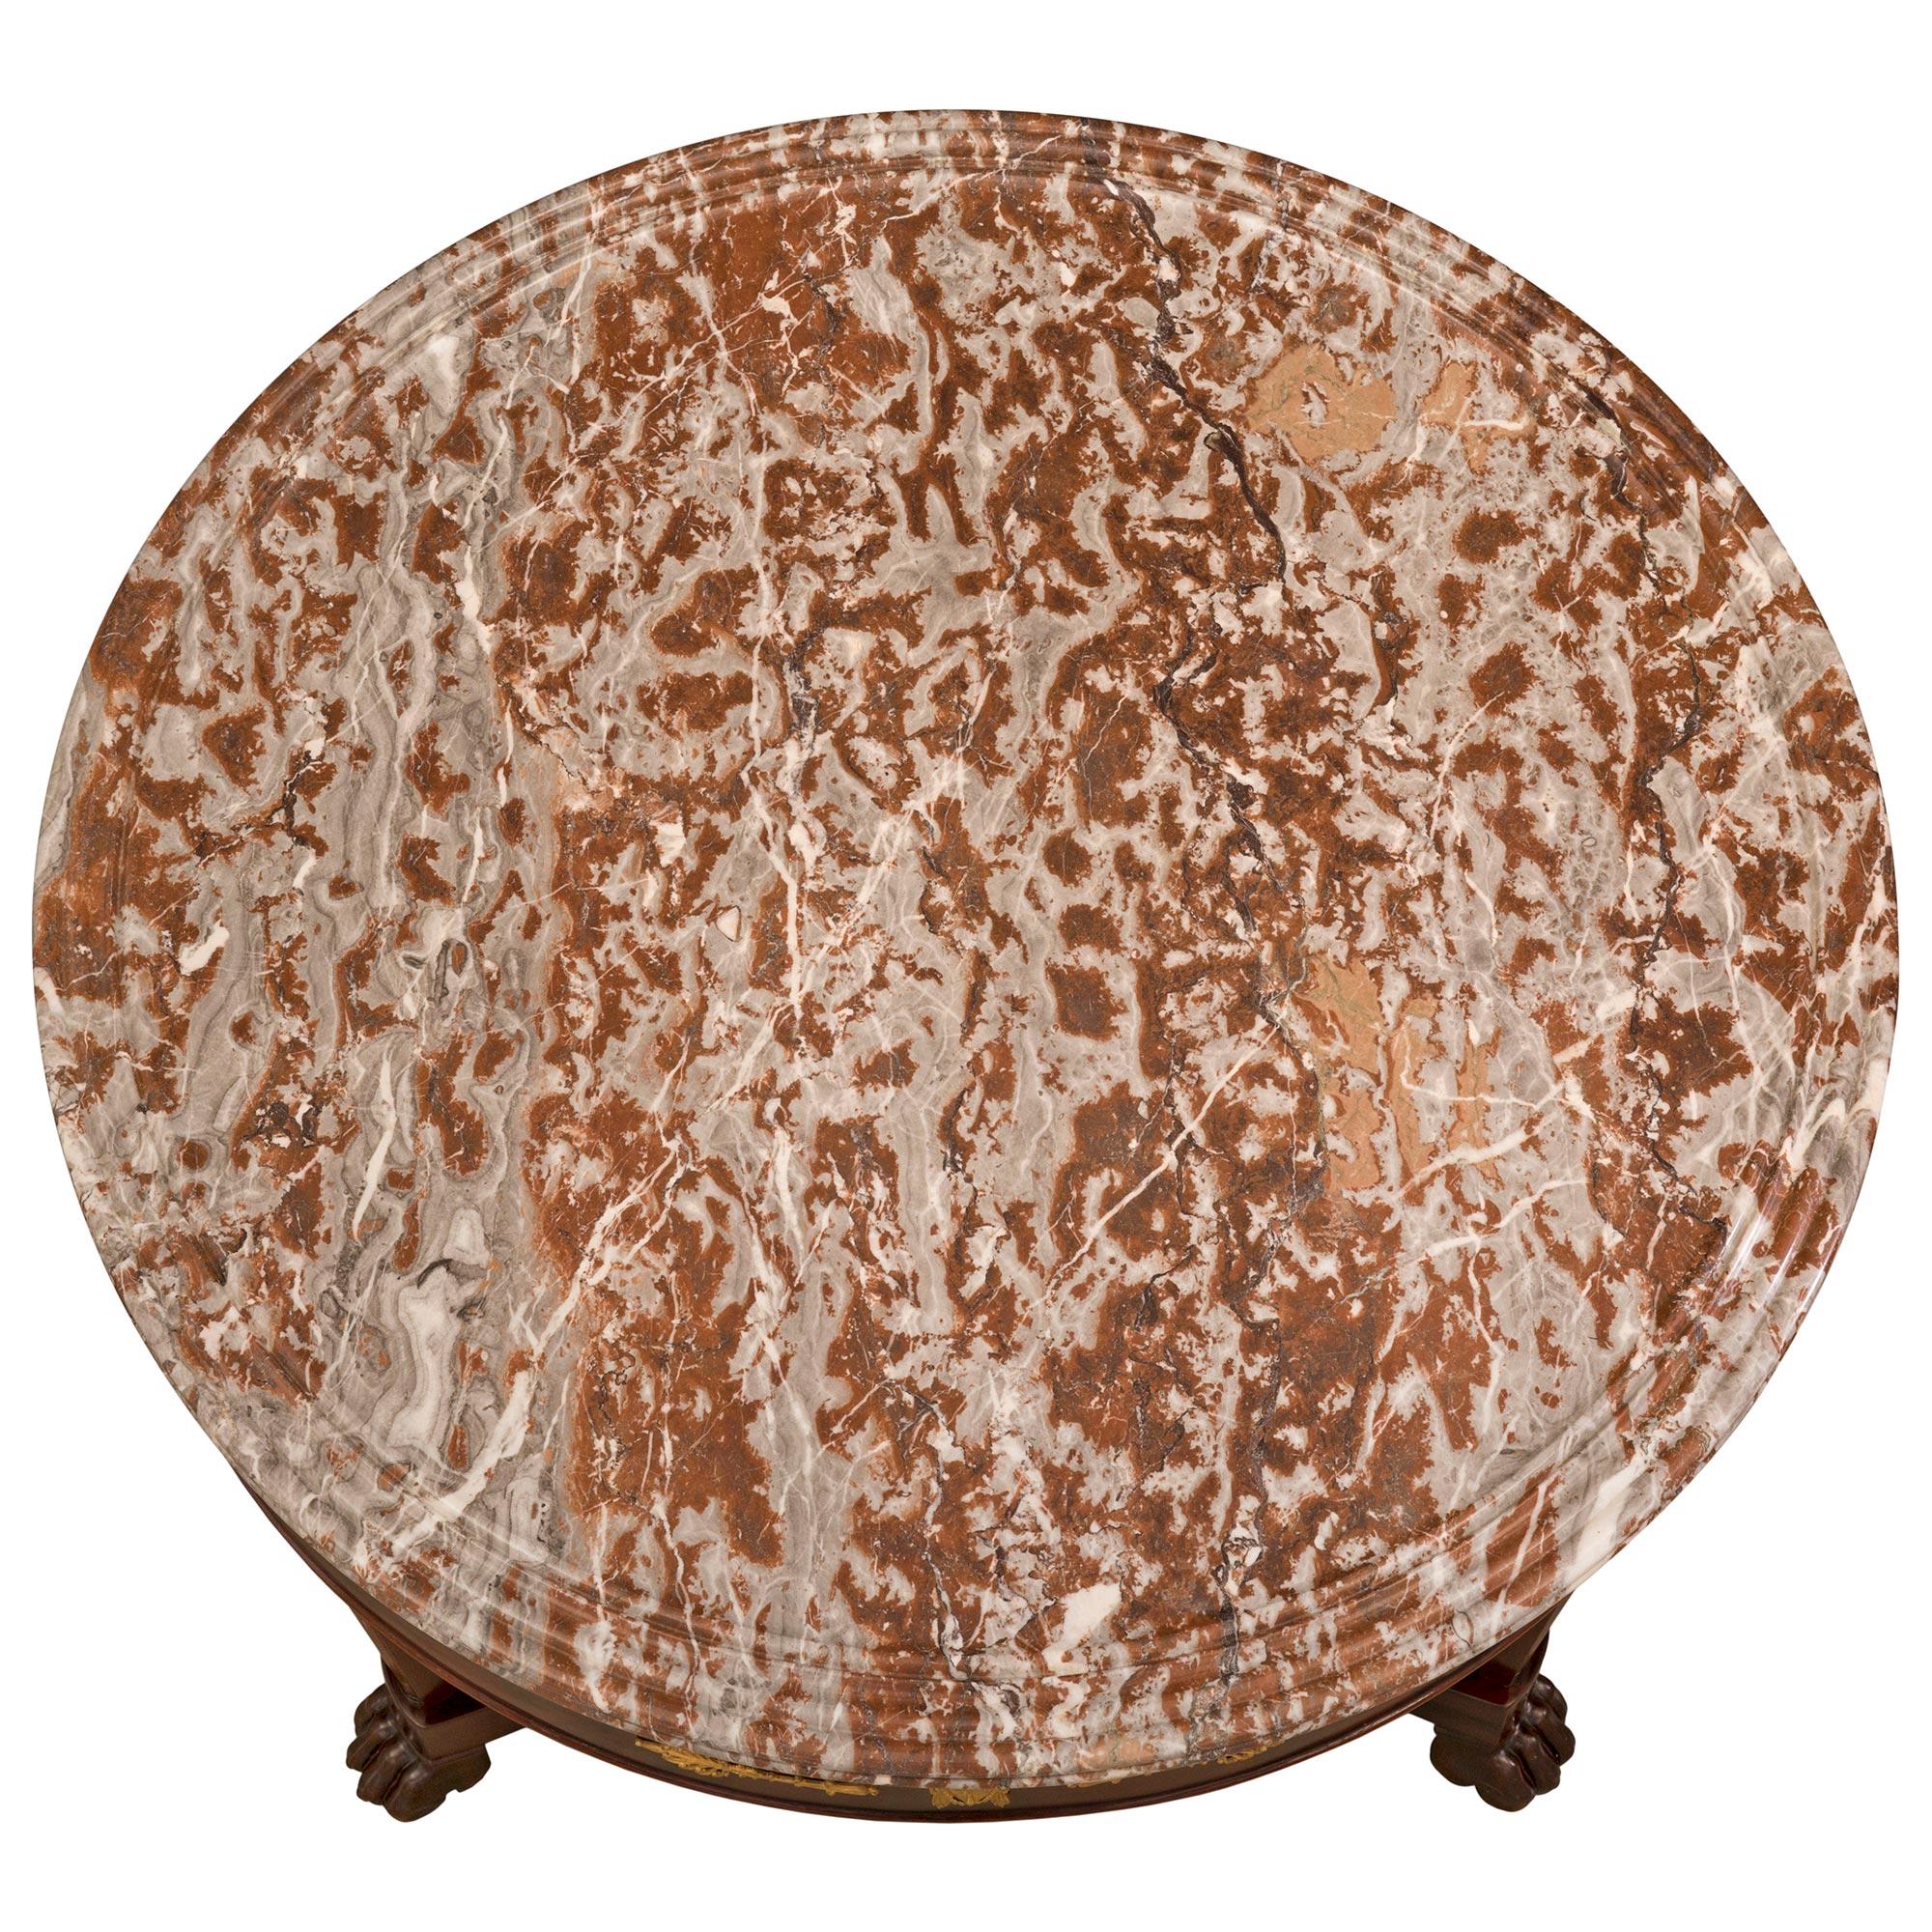 Ein sehr schöner französischer Empire-Tisch aus dem 19. Jahrhundert aus Mahagoni, Ormolu und Coquillier de Bilbao-Marmor. Der runde Tisch steht auf drei eleganten, quadratischen, spitz zulaufenden Beinen mit eindrucksvollen Tatzenfüßen und ist mit